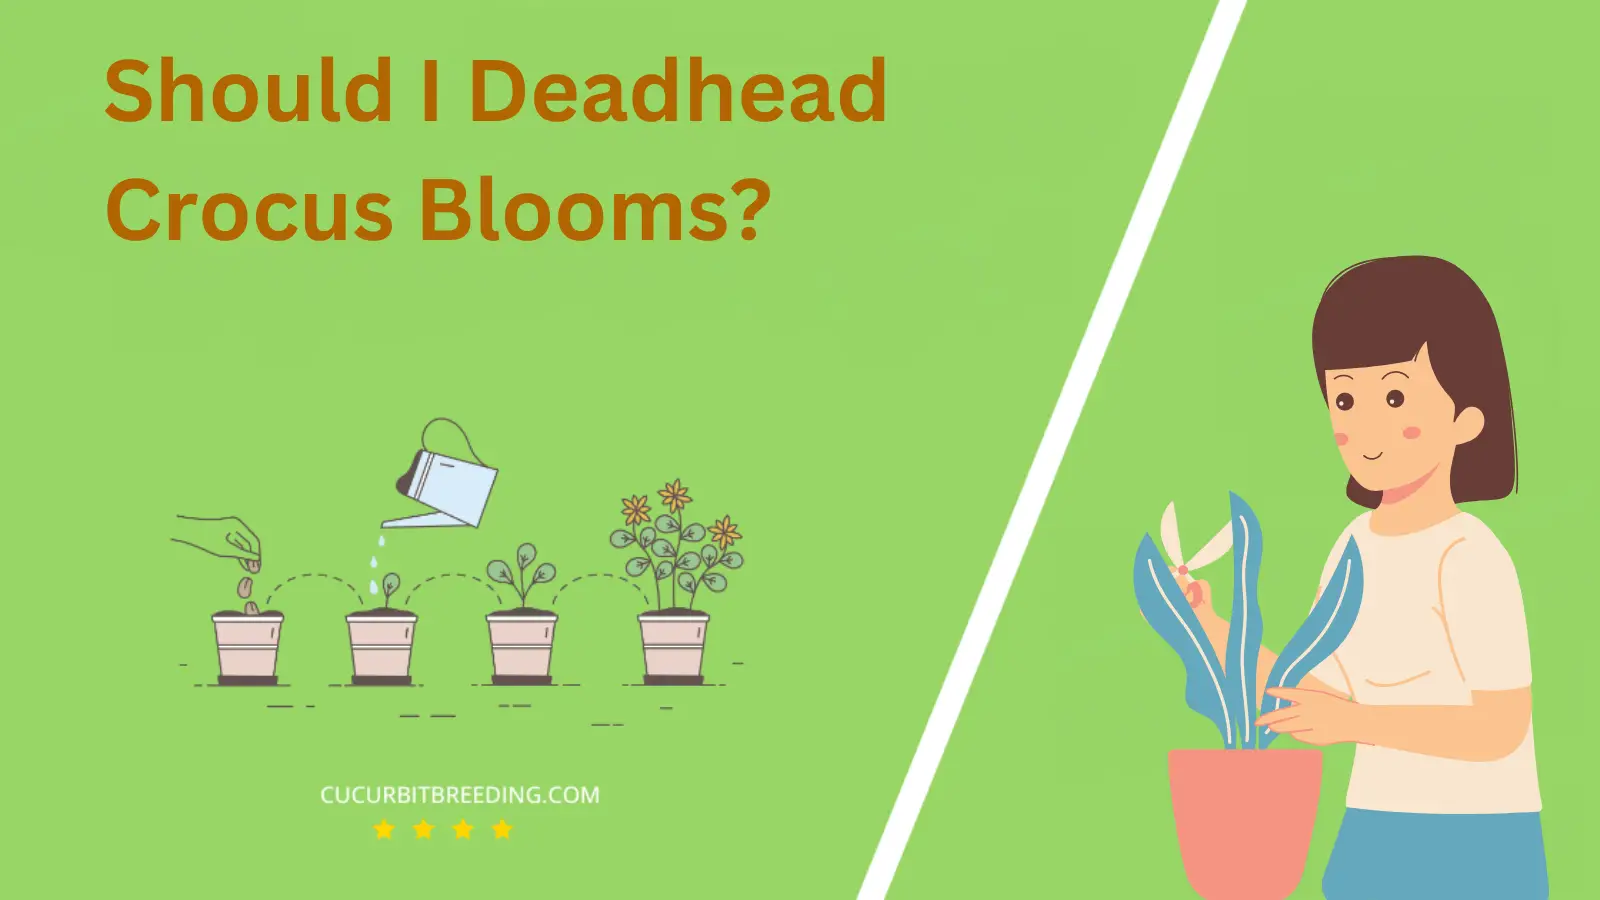 Should I Deadhead Crocus Blooms?